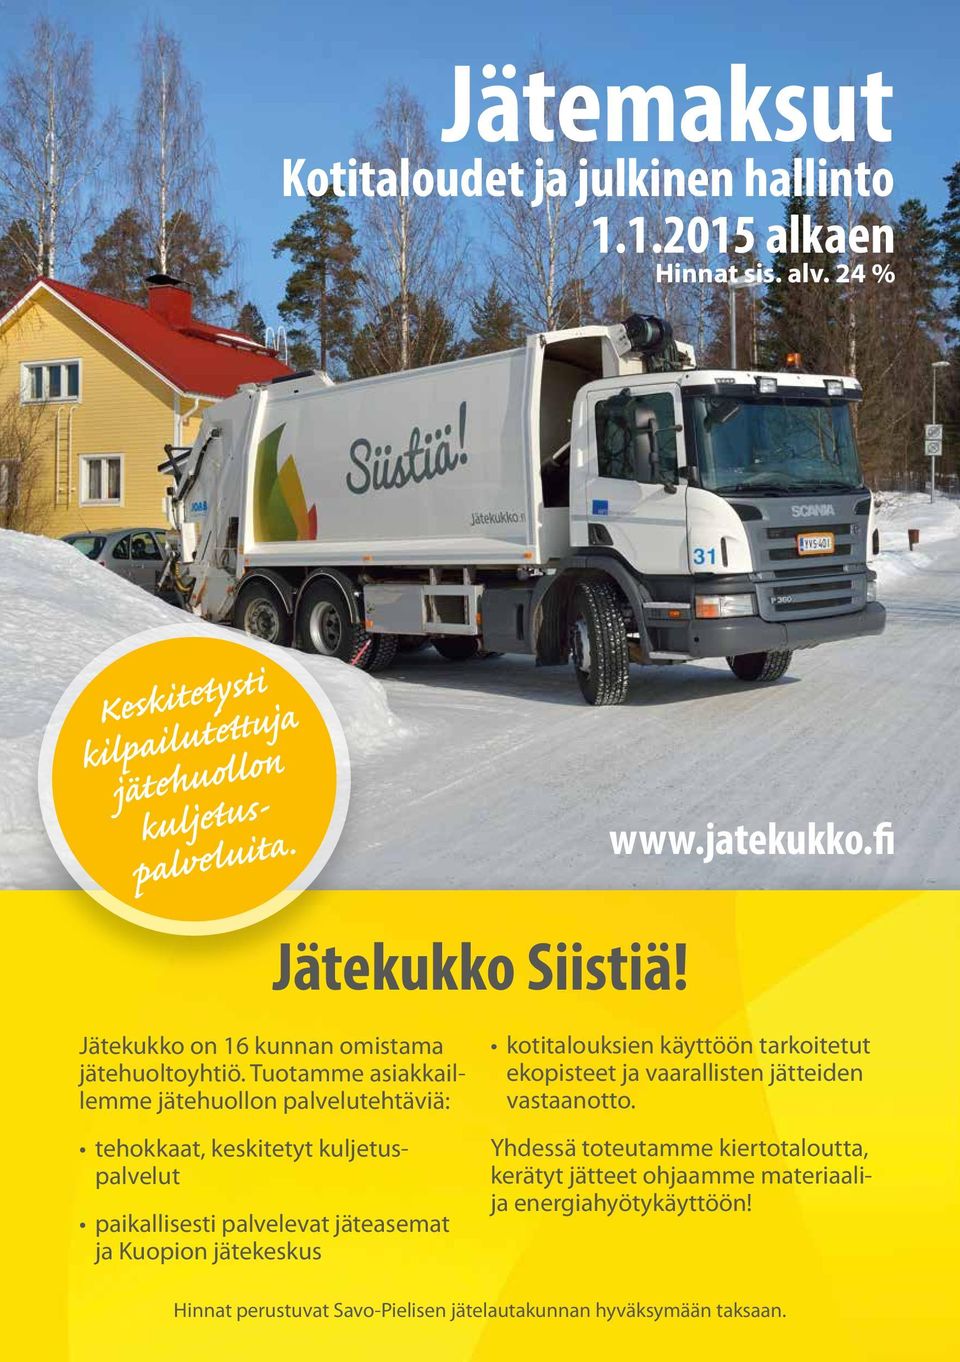 Tuotamme asiakkaillemme jätehuollon palvelutehtäviä: tehokkaat, keskitetyt kuljetuspalvelut paikallisesti palvelevat jäteasemat ja Kuopion jätekeskus